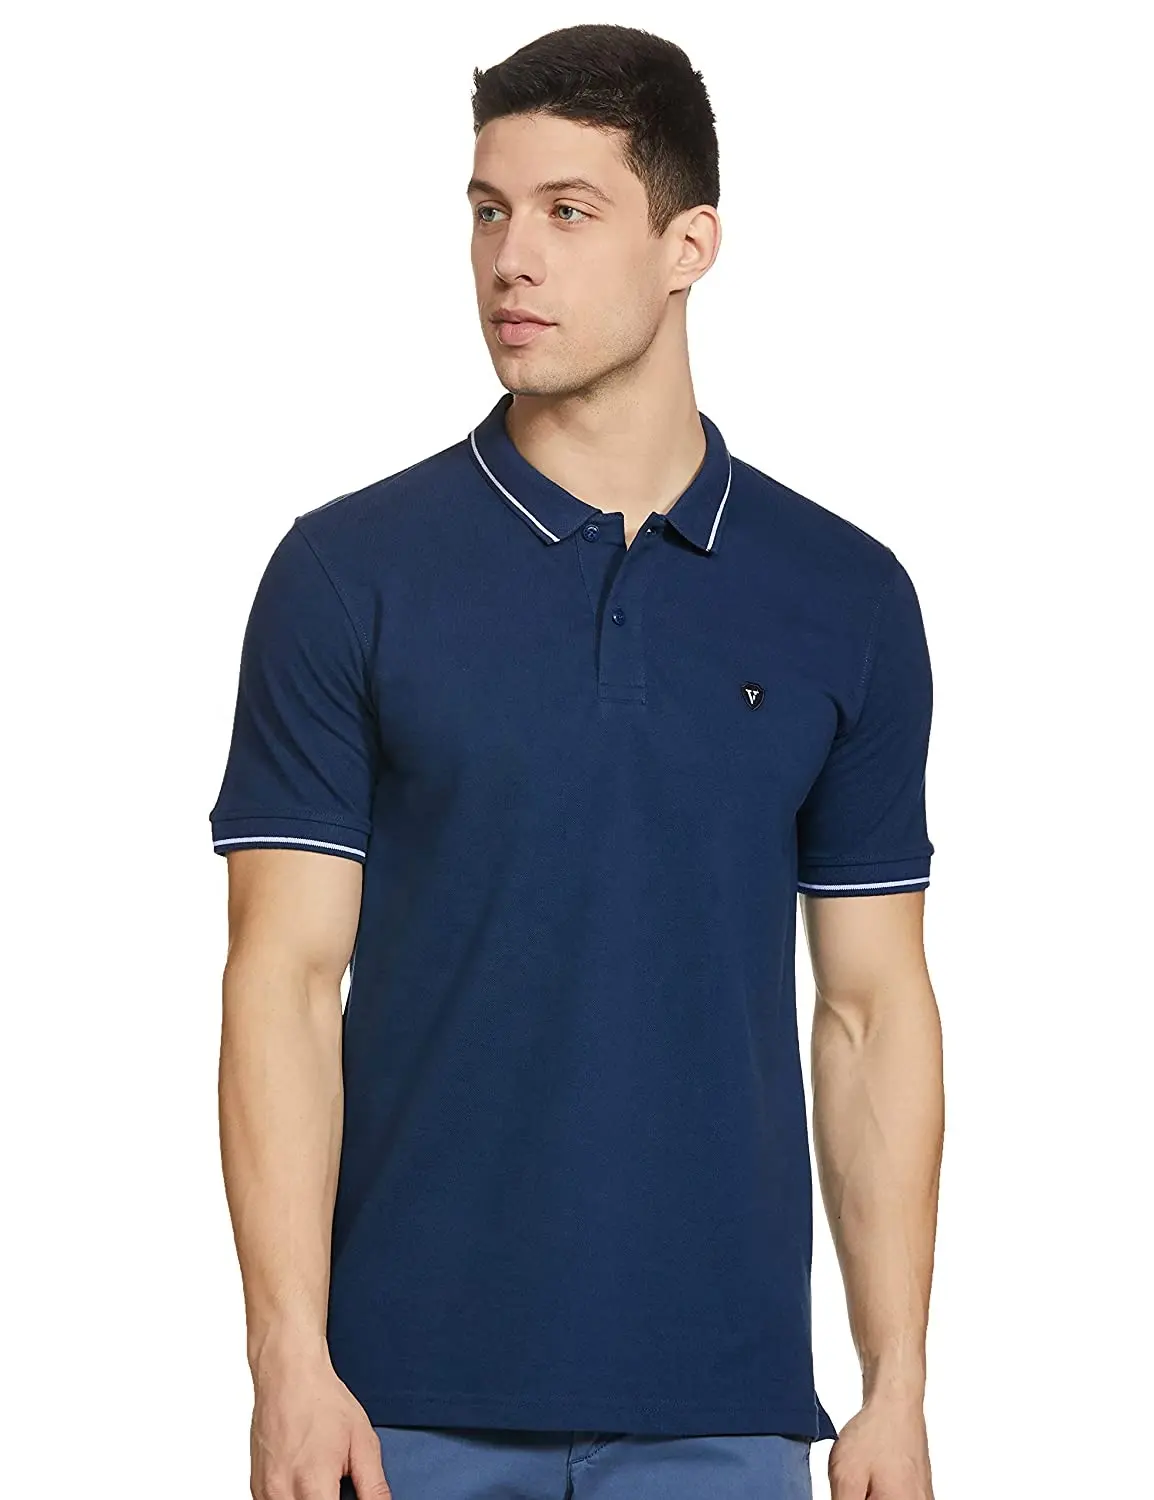 T-shirt polo a manica corta di alta qualità con logo sportivo di alta qualità stampa a sublimazione da uomo design personalizzato per uomo